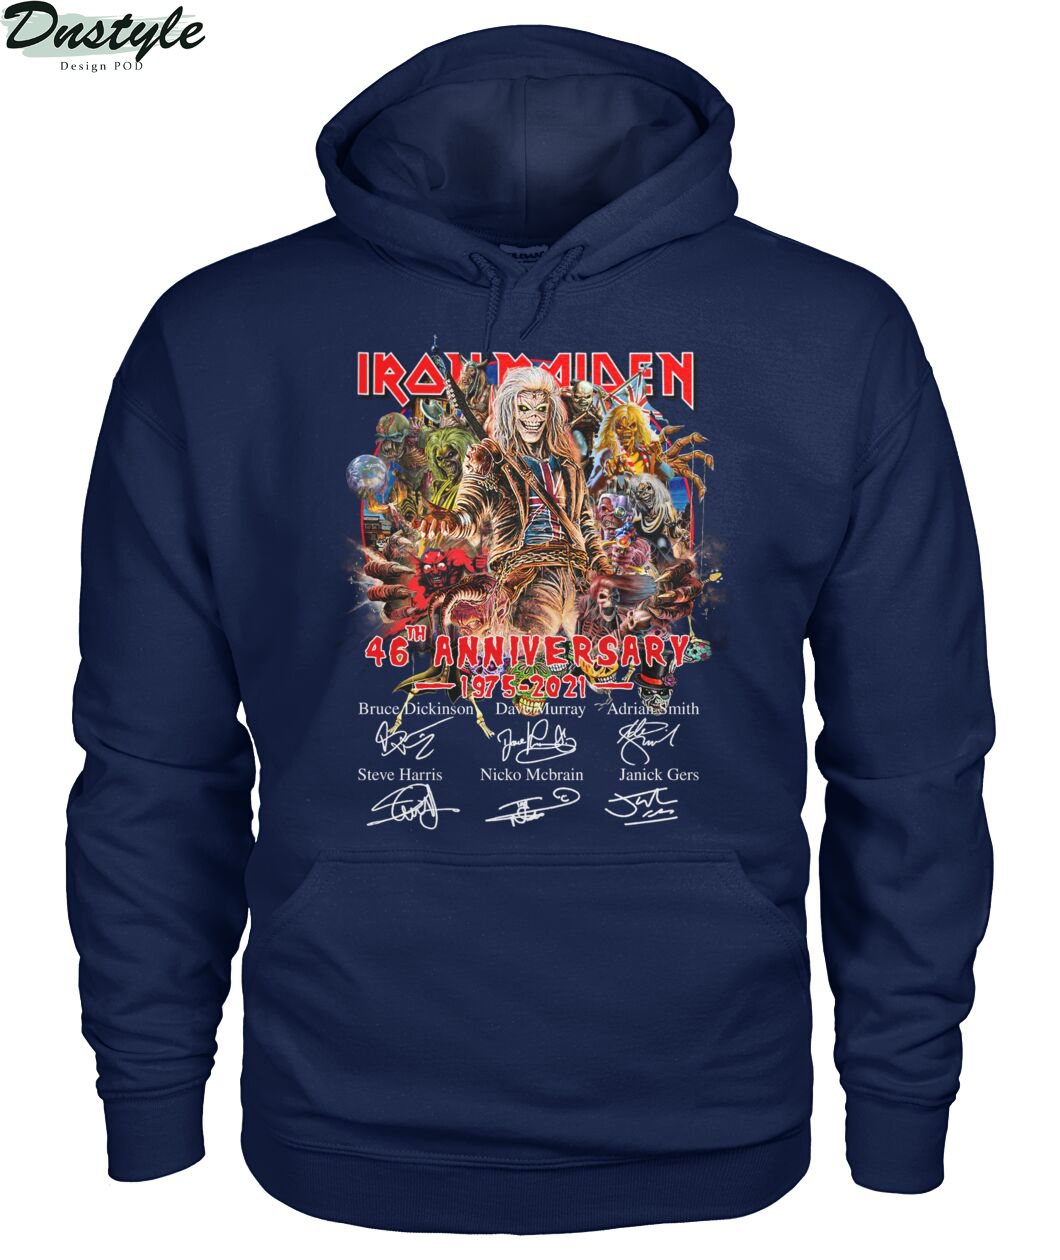 Iron Maiden 46th anniversary 1975 2021 signature hoodie